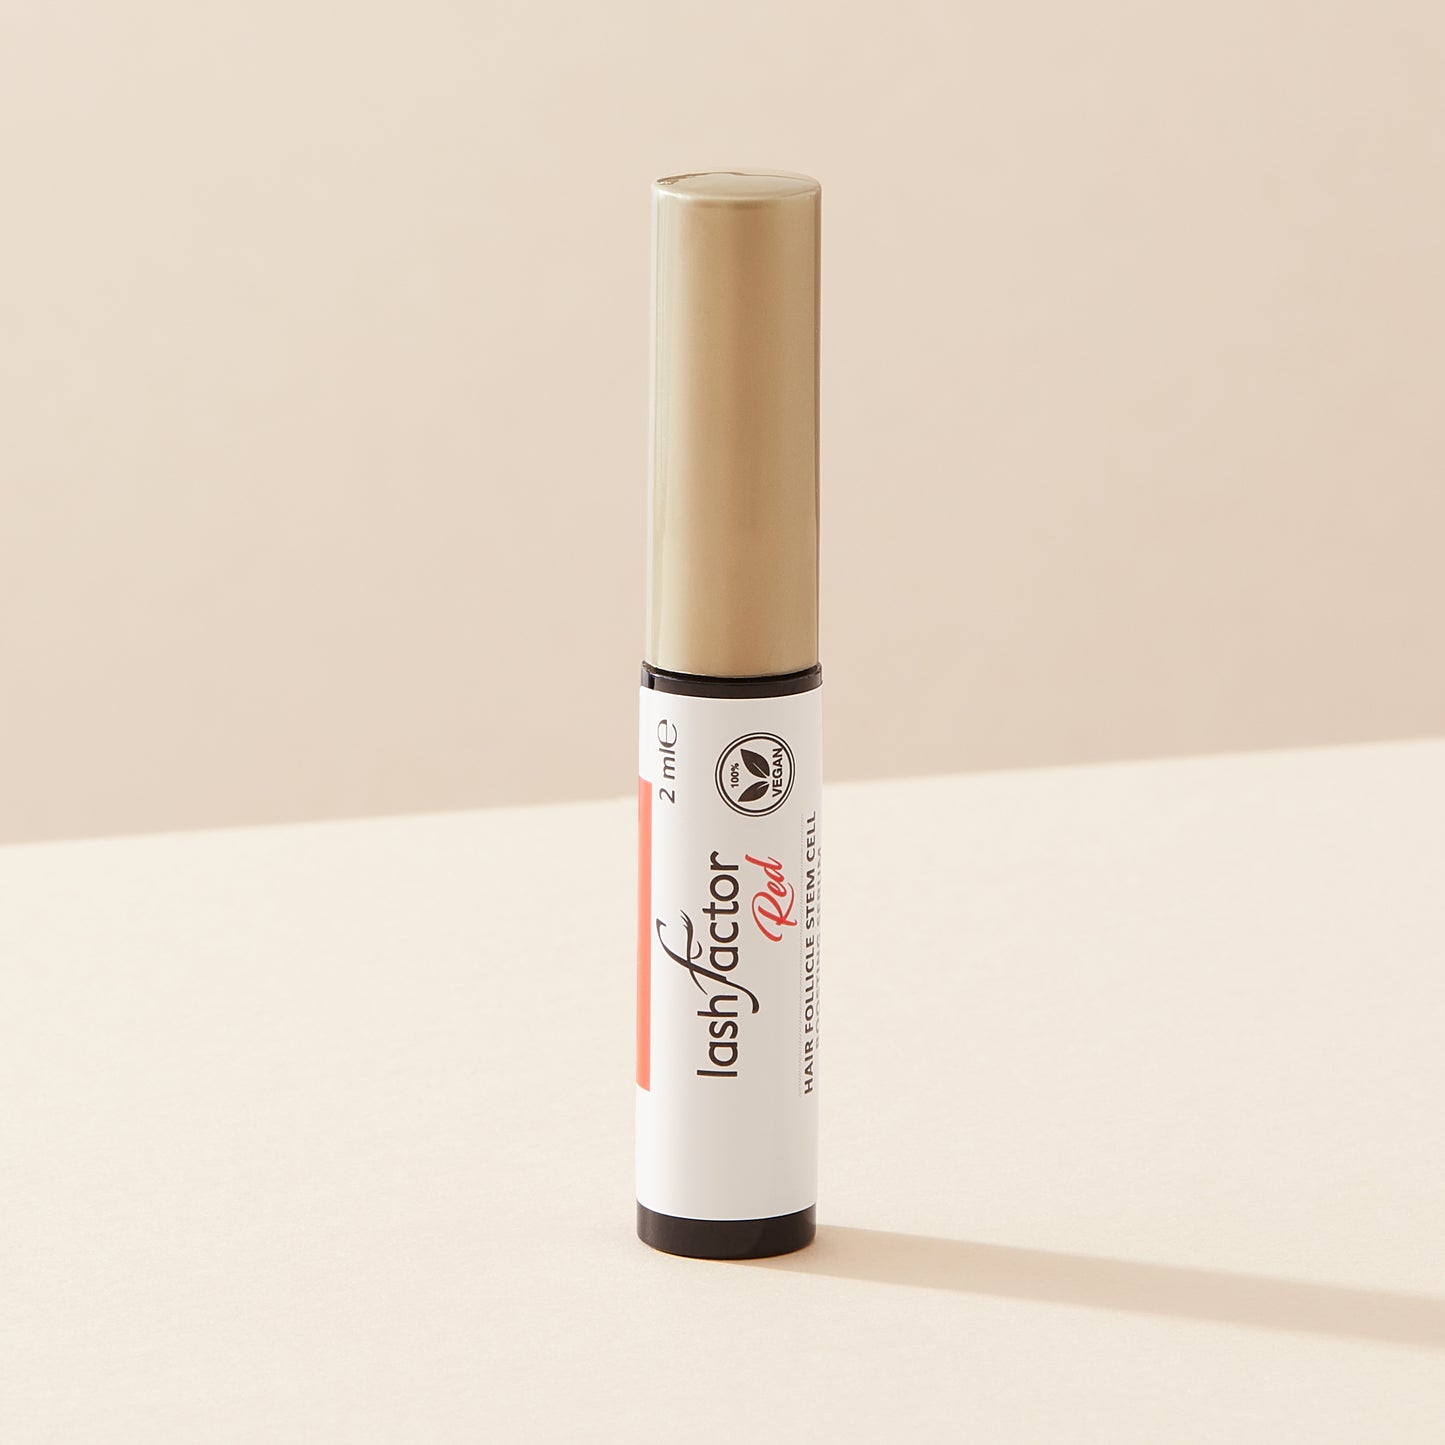 Red-serum-bottle-for-longer-and-fuller lashes-Lashfactor